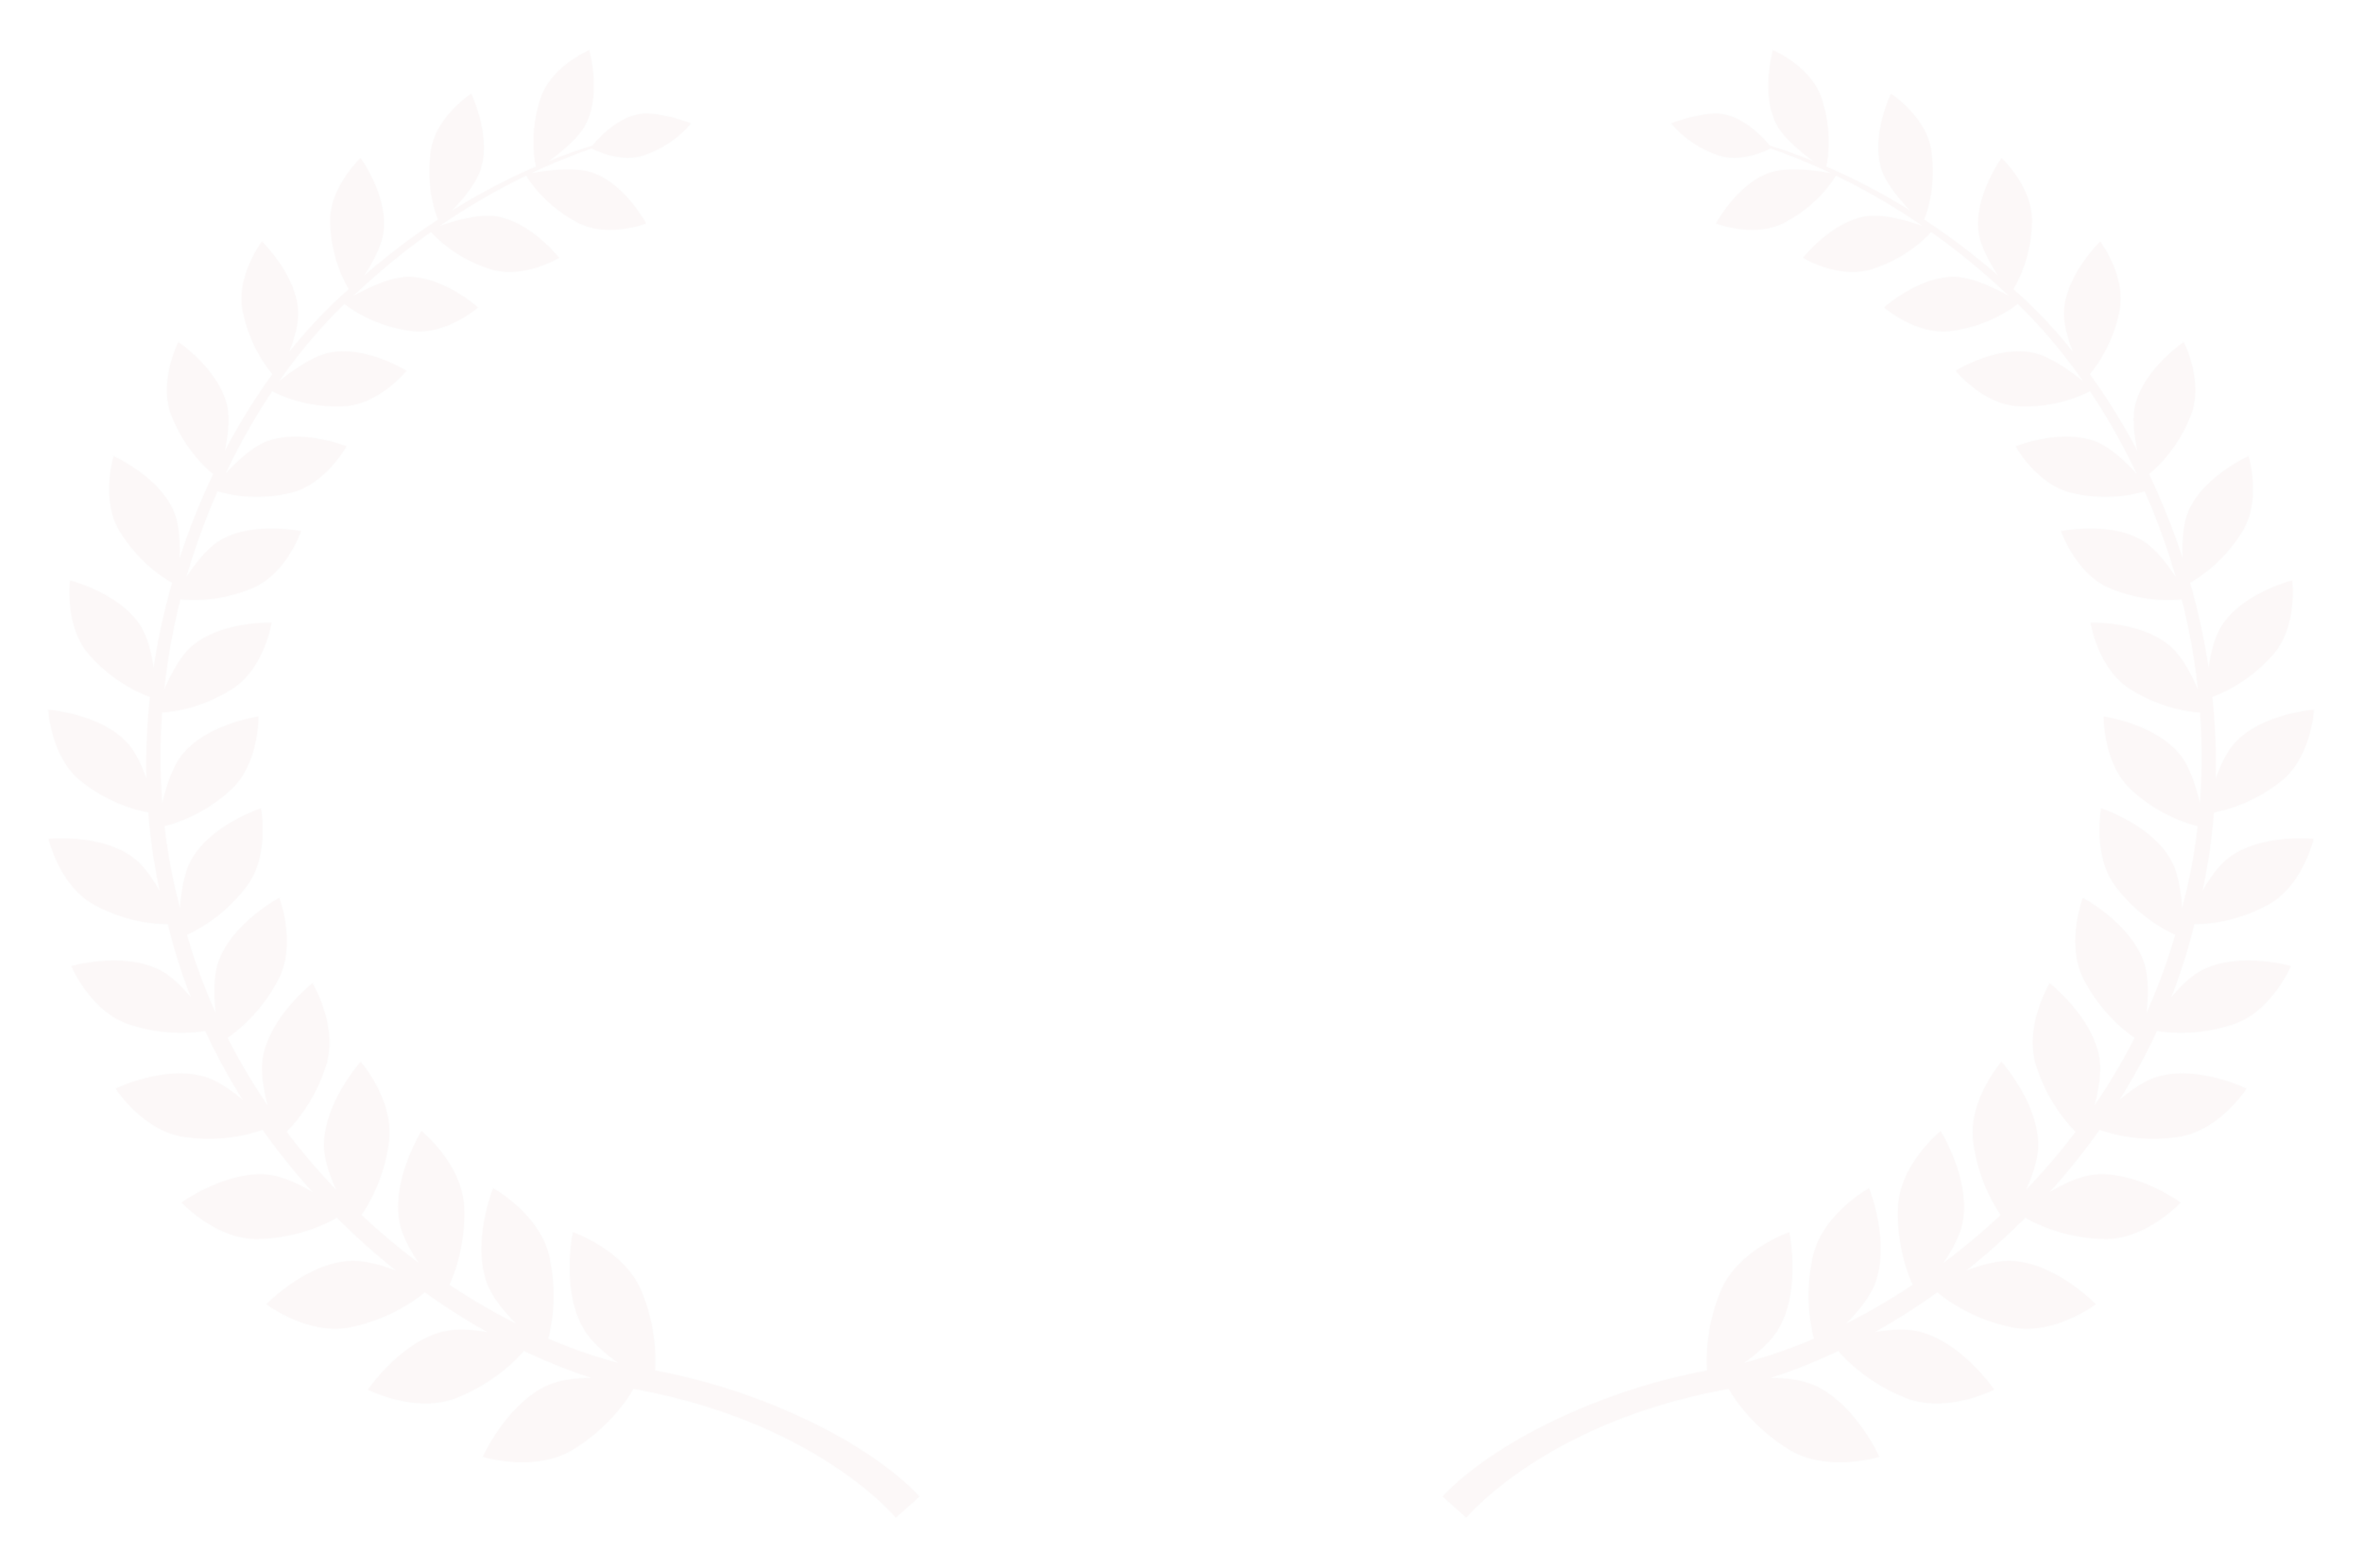 BESTFOREIGNFILM-CERVINOCINEMOUNTAIN-2017.png